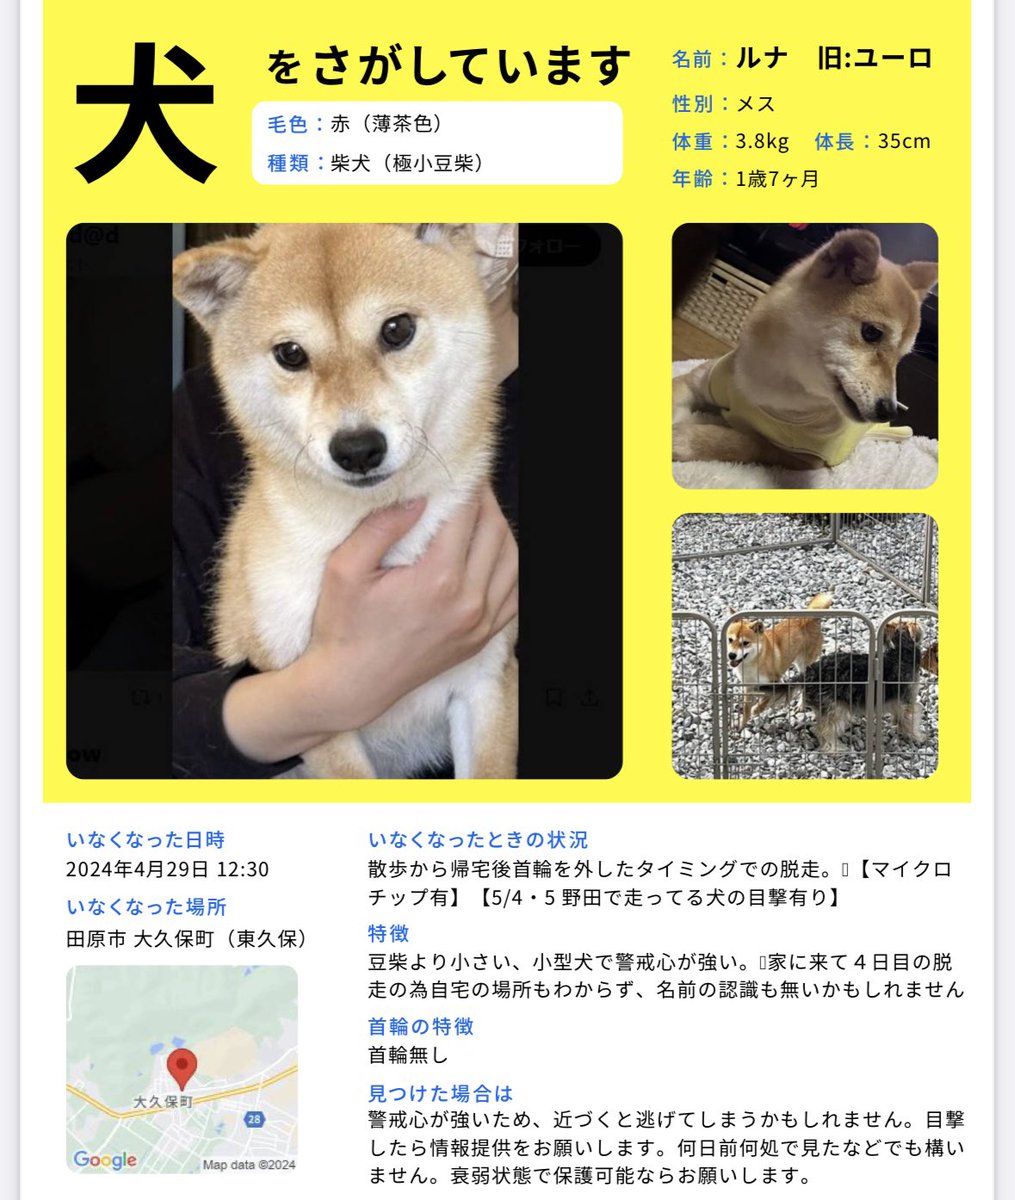 見つかりました！
田原市神戸付近にて他の犬の散歩について来たらしく一般の方が保護してくれました！

警察から連絡来て今迎えに行きました。
有難う御座いました！！